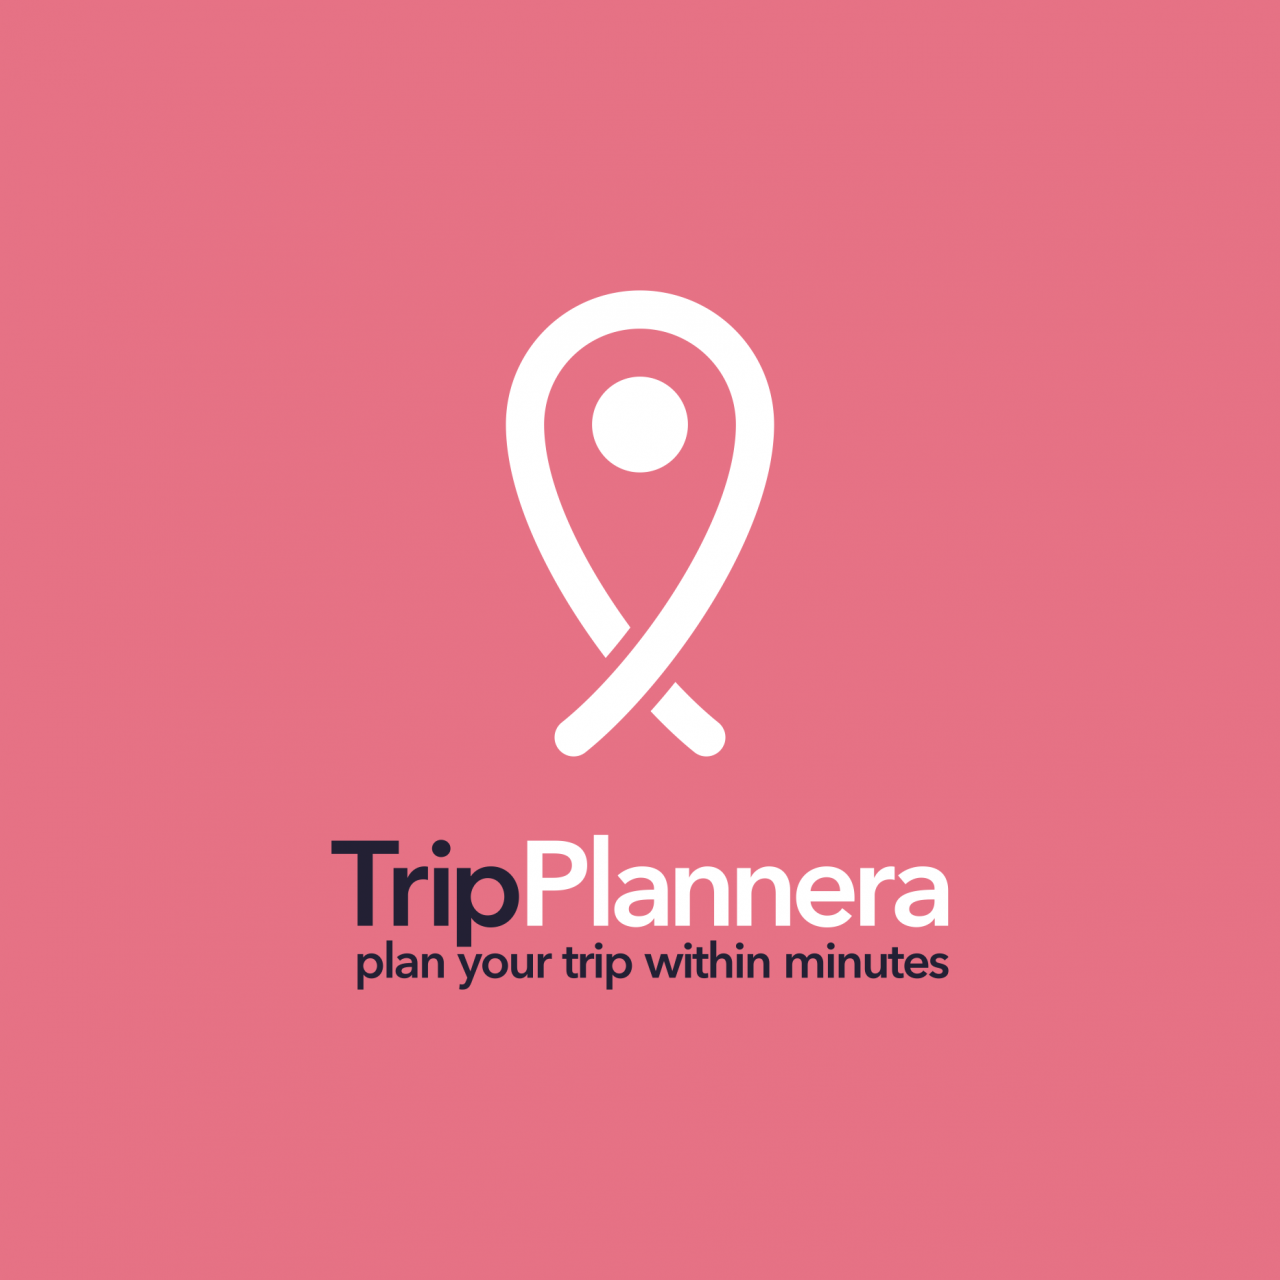 TripPlannera-ն օգնում է հաշված րոպեների ընթացքում ինքնուրույն կազմակերպել ճամփորդությունը